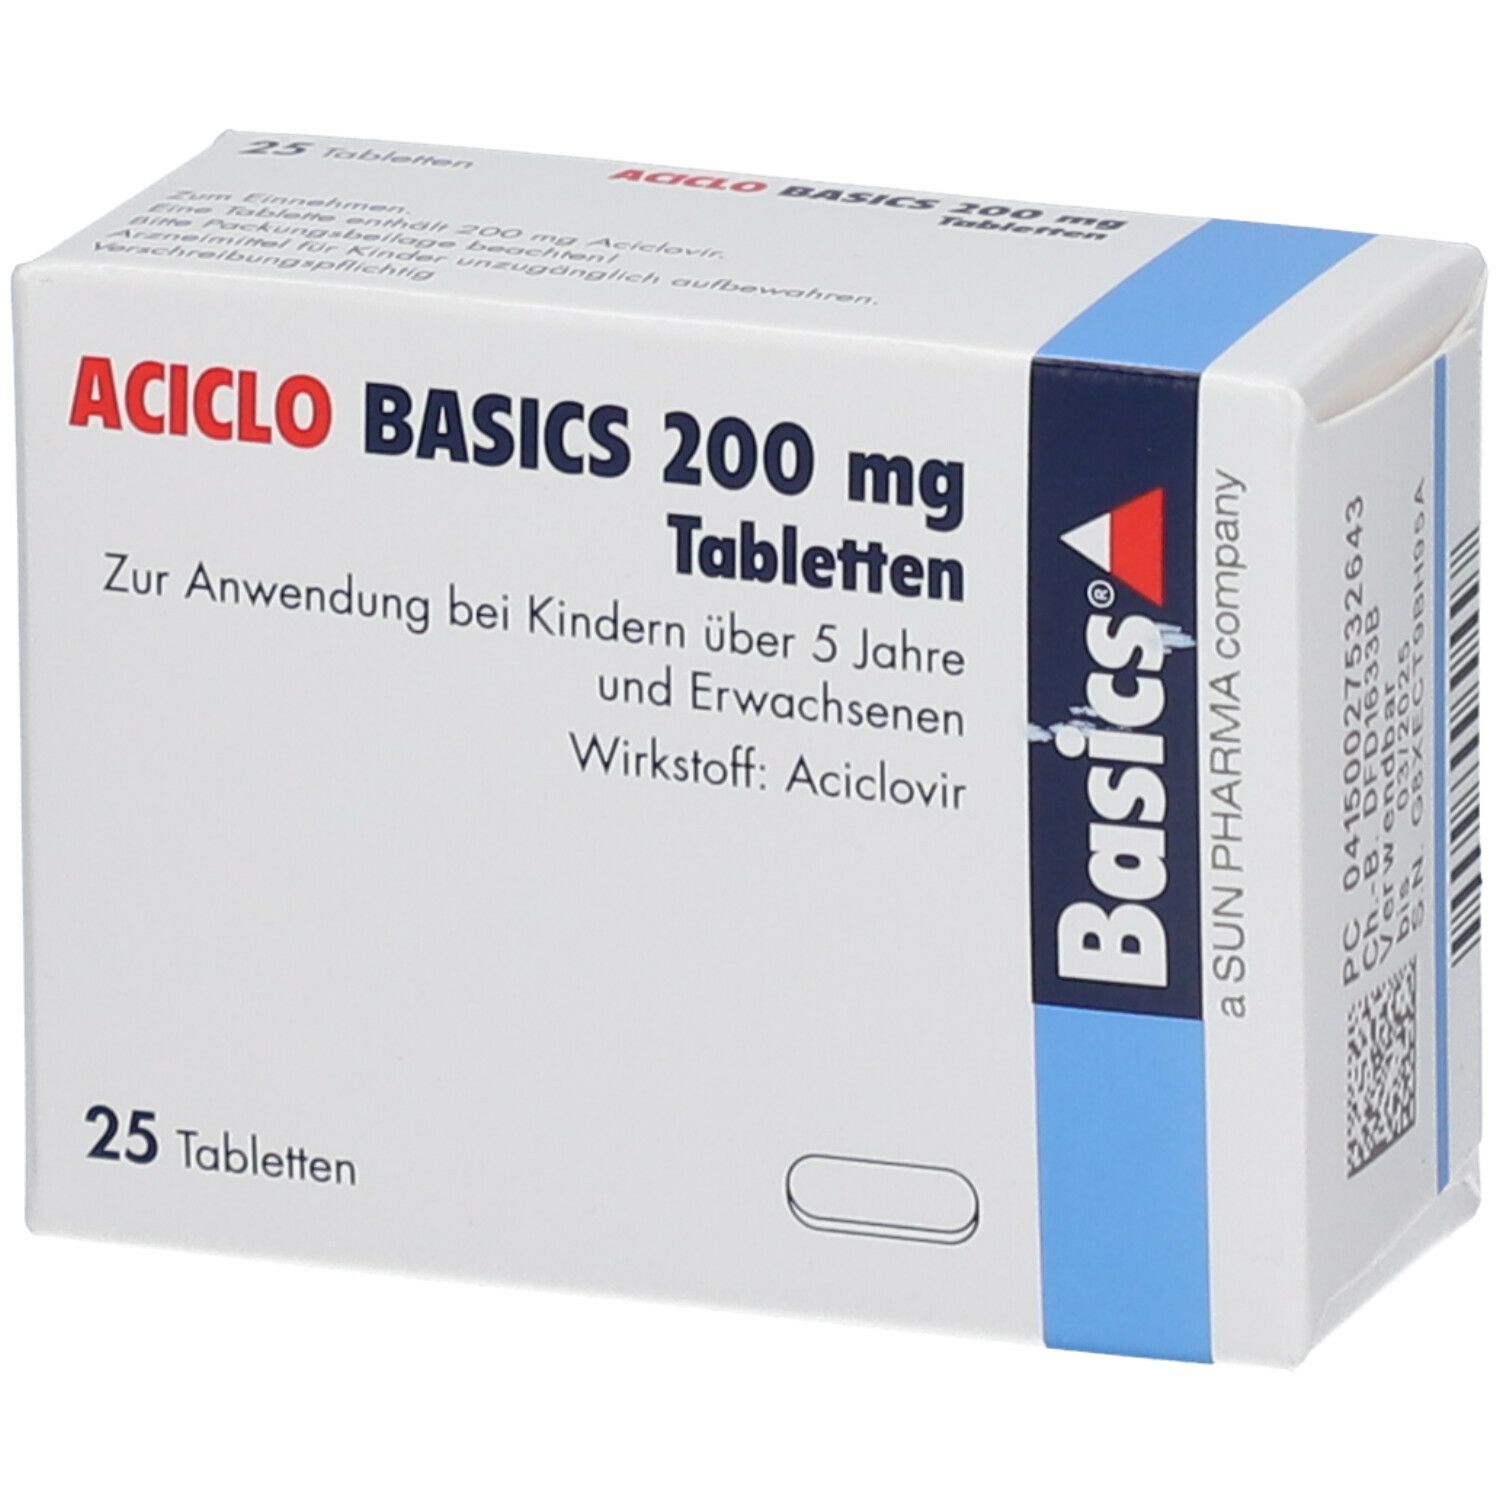 ACICLO BASICS 200 mg